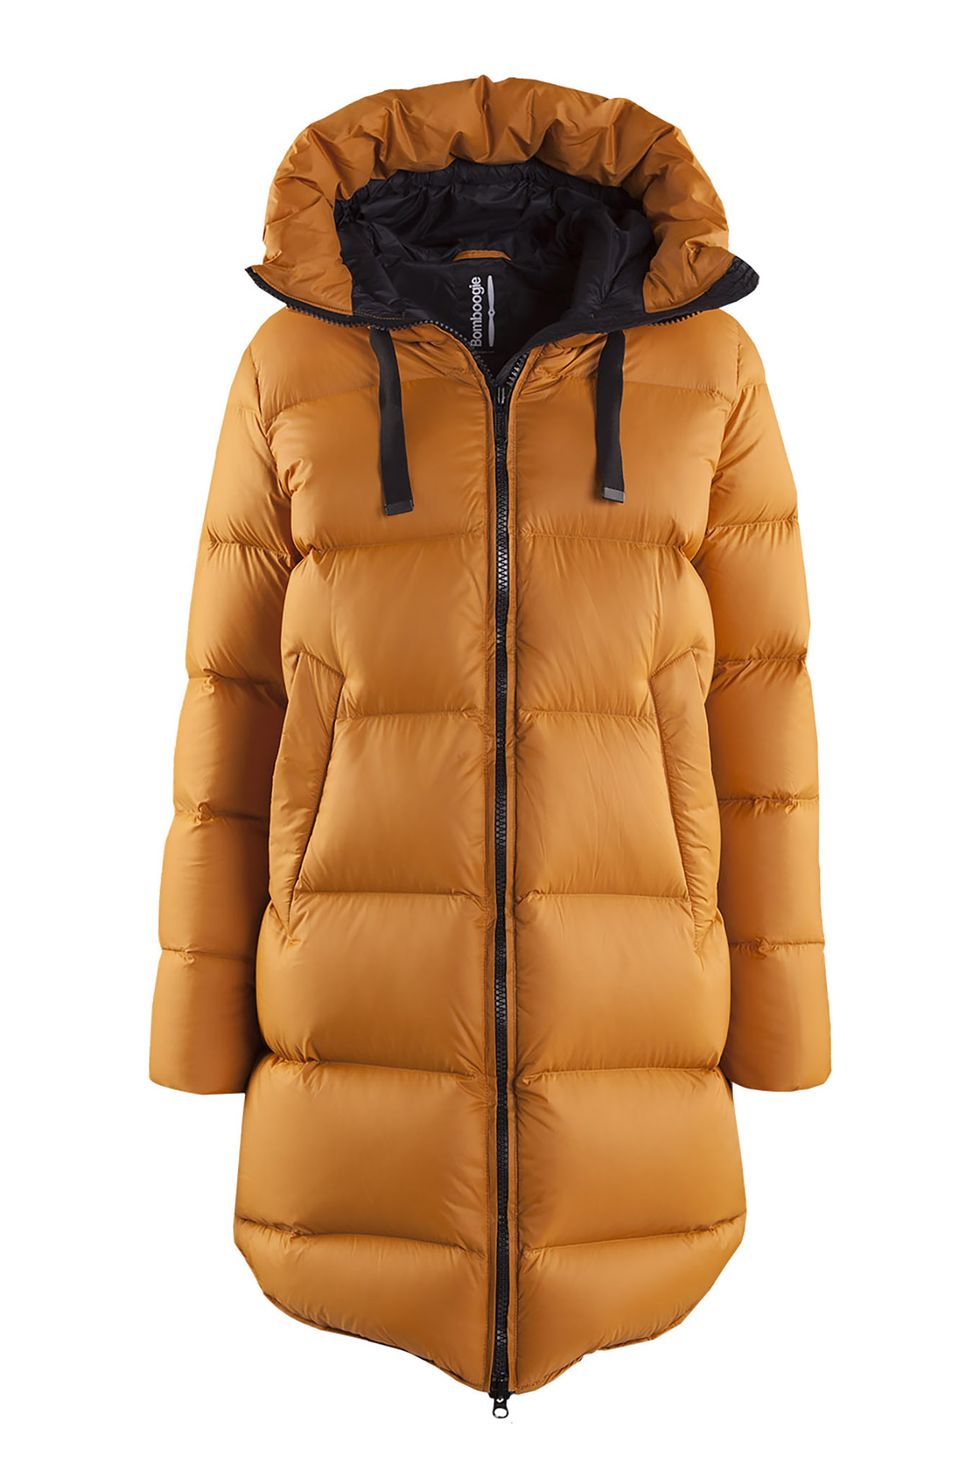 tra i tipi di giacche invernali su cui potresti investire il tuo budget moda, l'opzione piumini 202021 punta ai modelli oversize come quello di rita ora